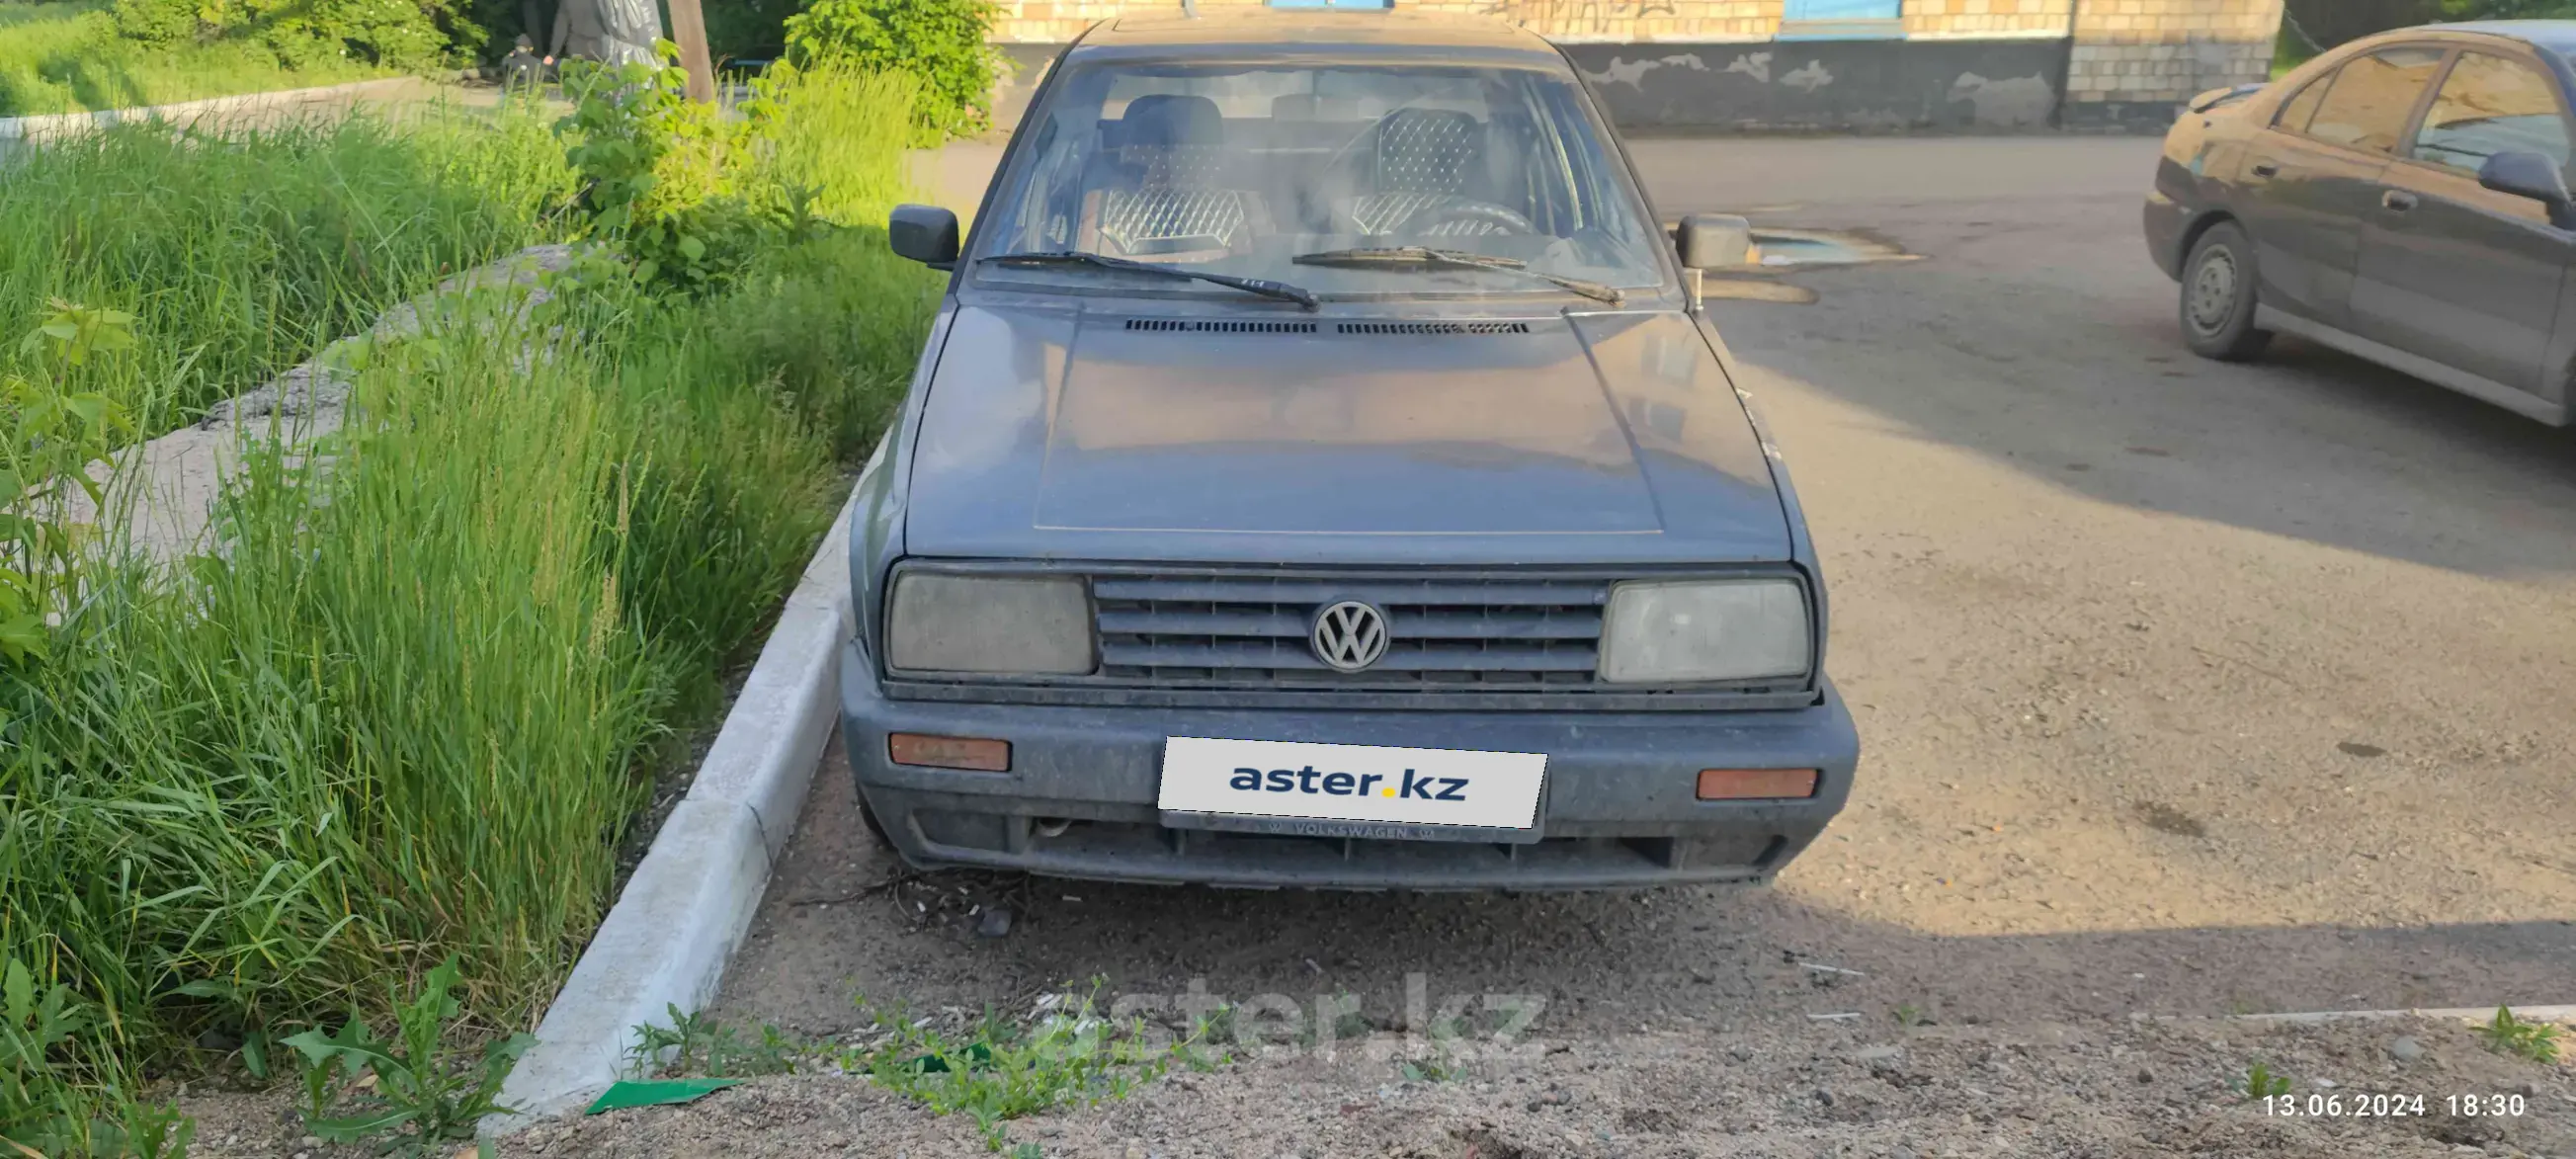 Volkswagen Jetta 1992